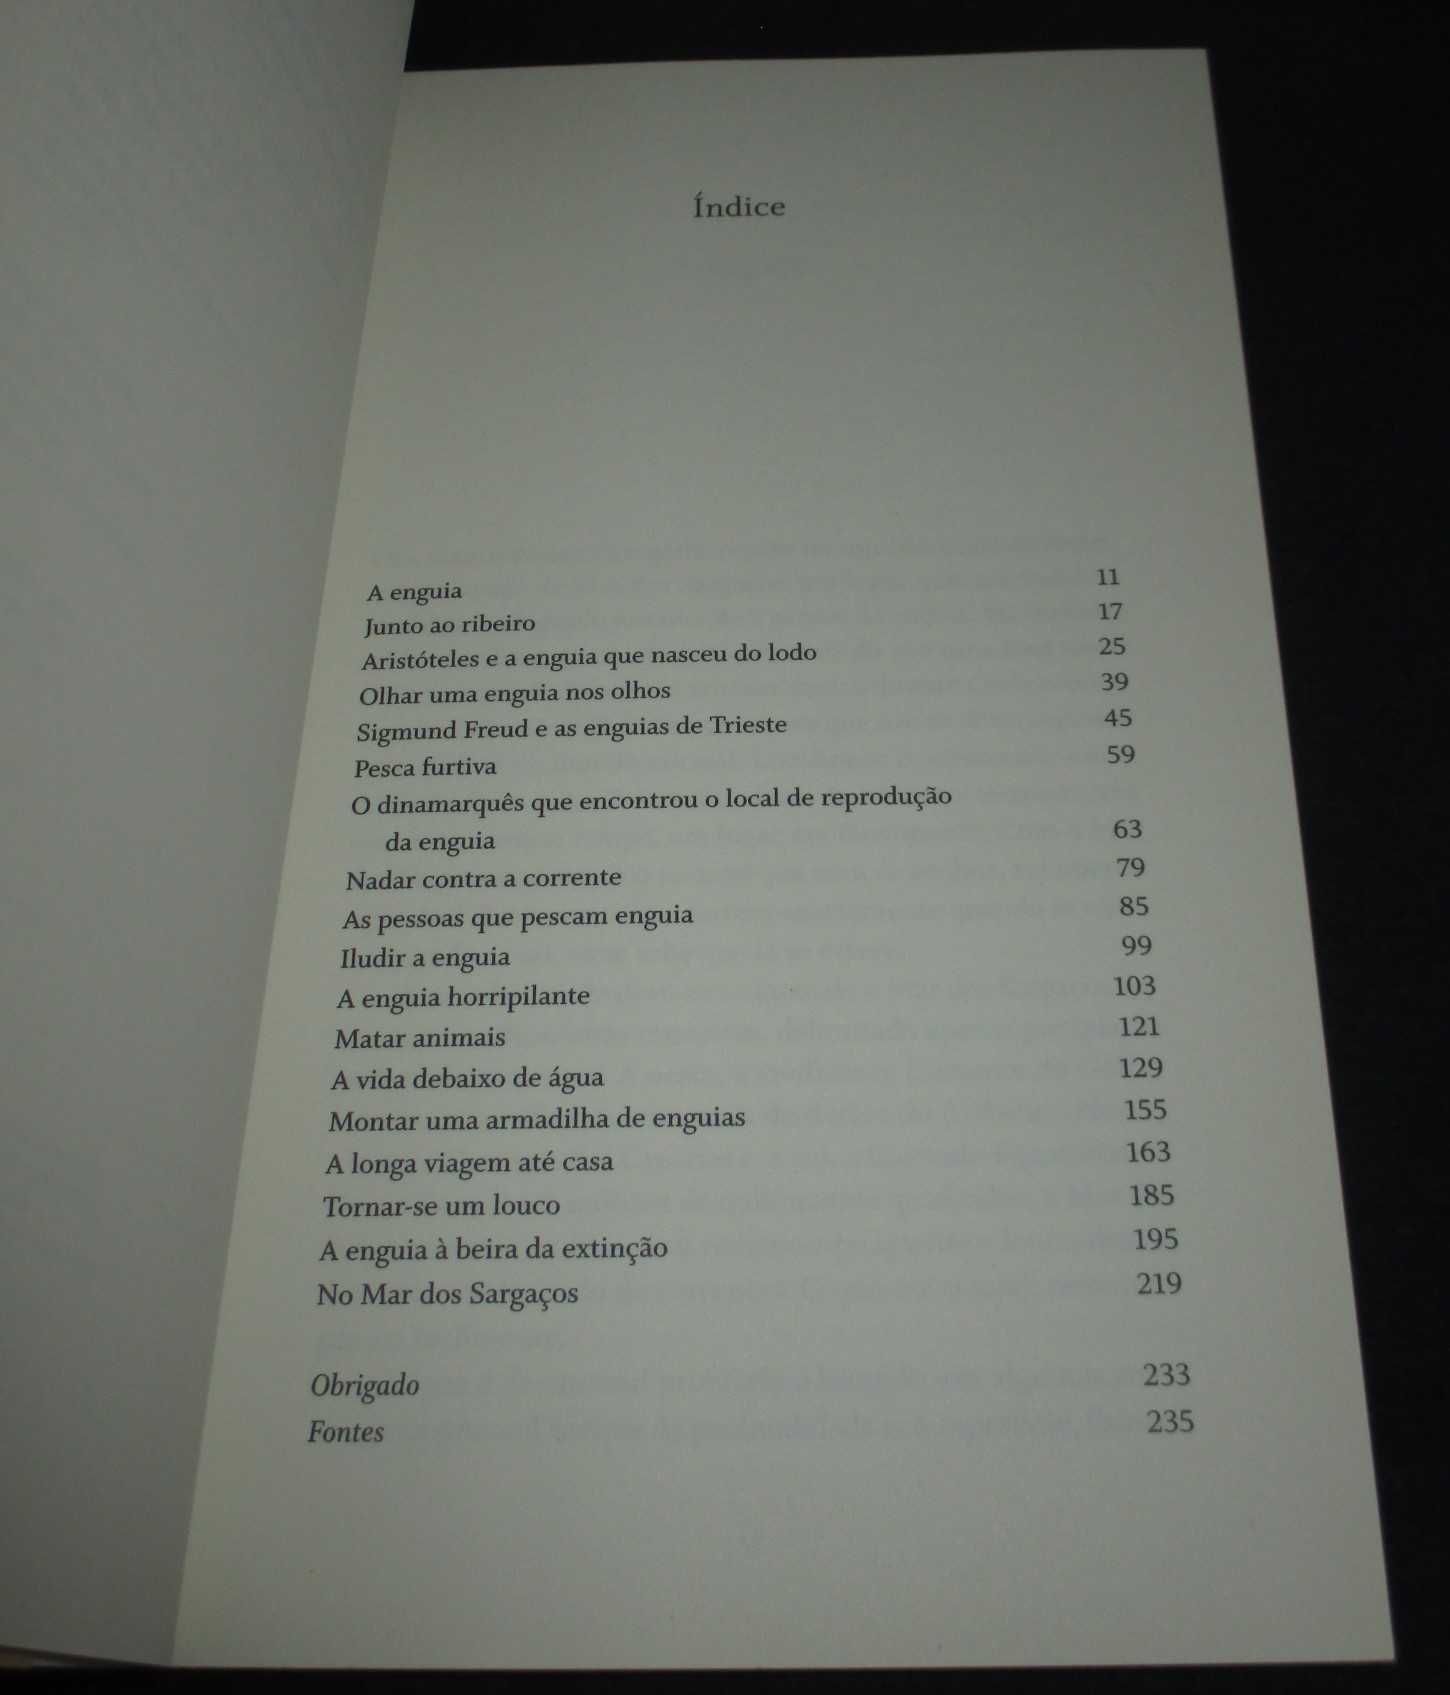 Livro O Evangelho das Enguias Patrik Svensson